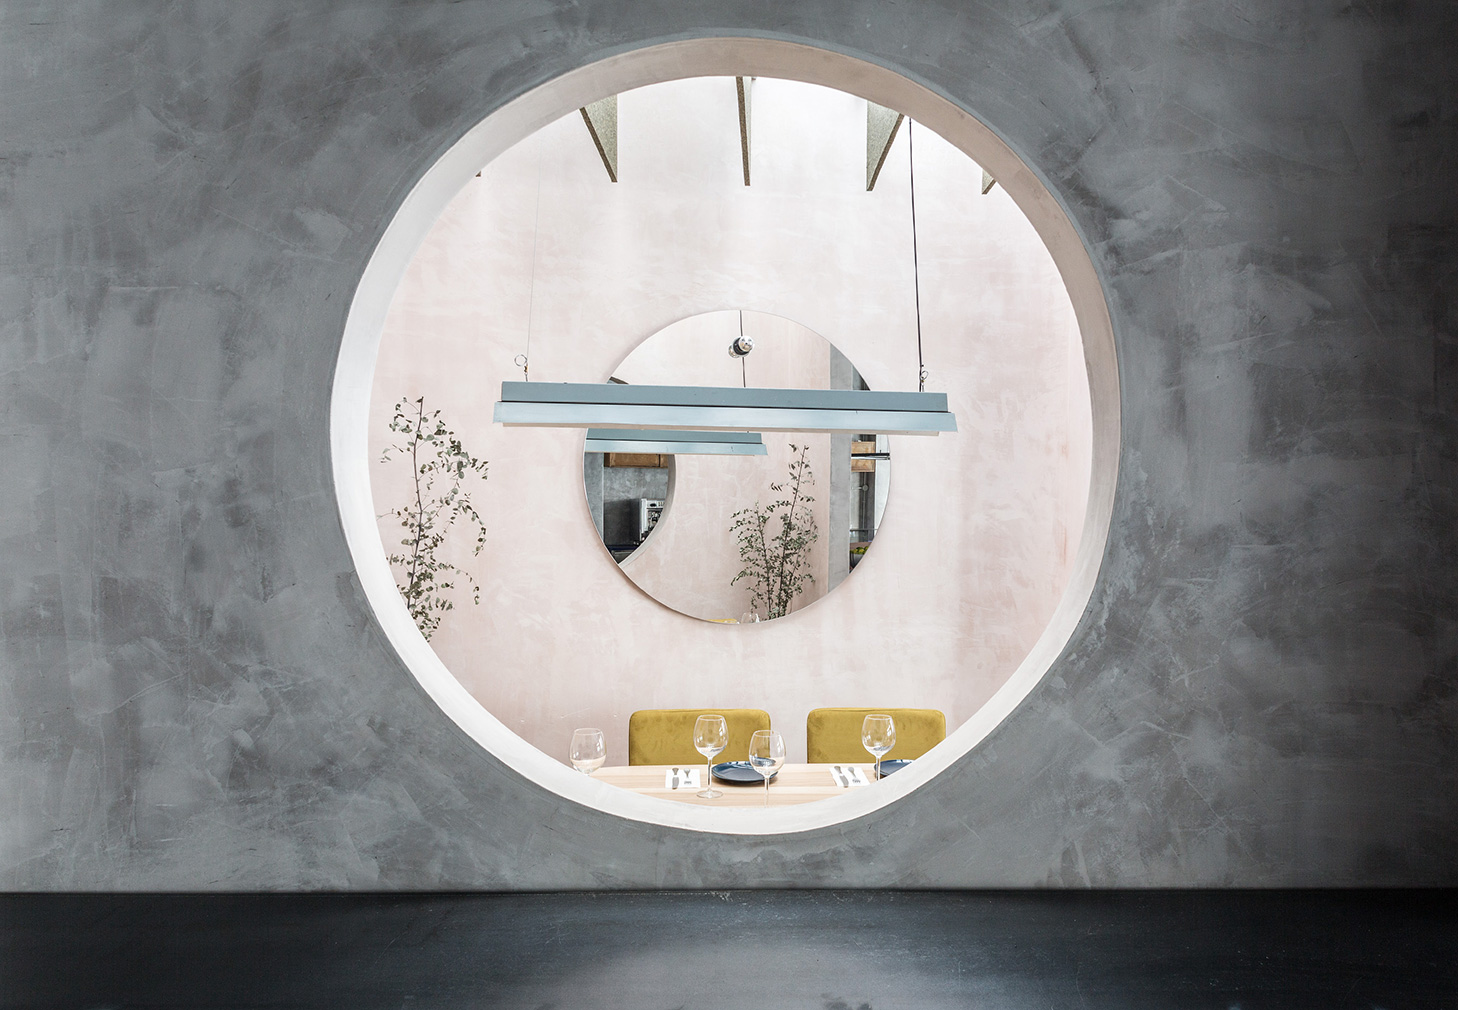 Seville restaurant with concrete, pastels, circles